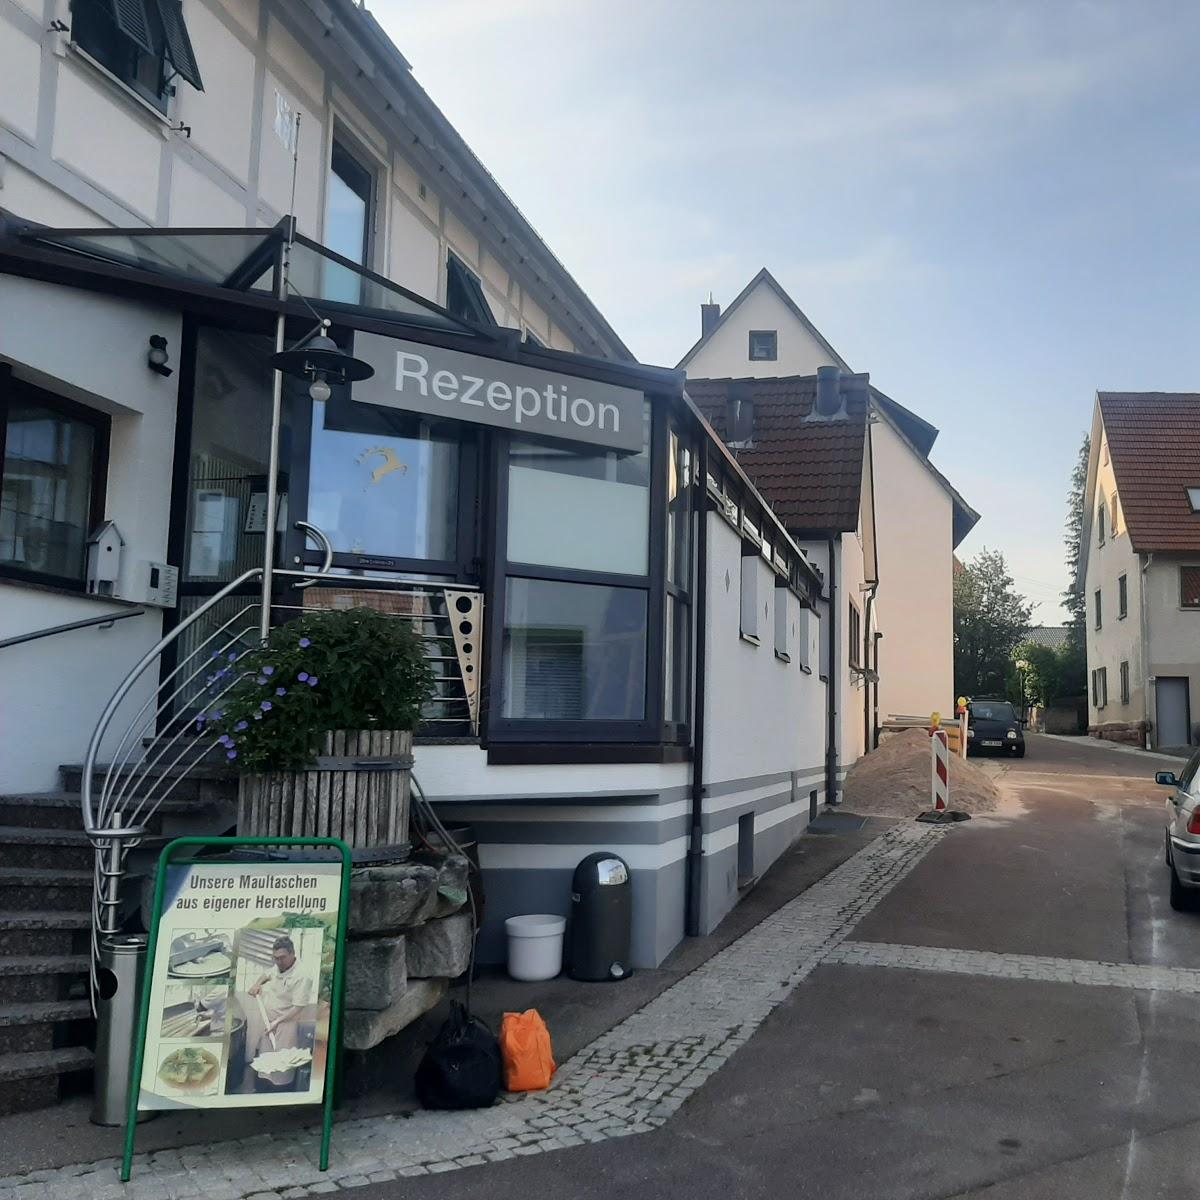 Restaurant "Hotel Hirsch Gastgewerbe" in Heimsheim